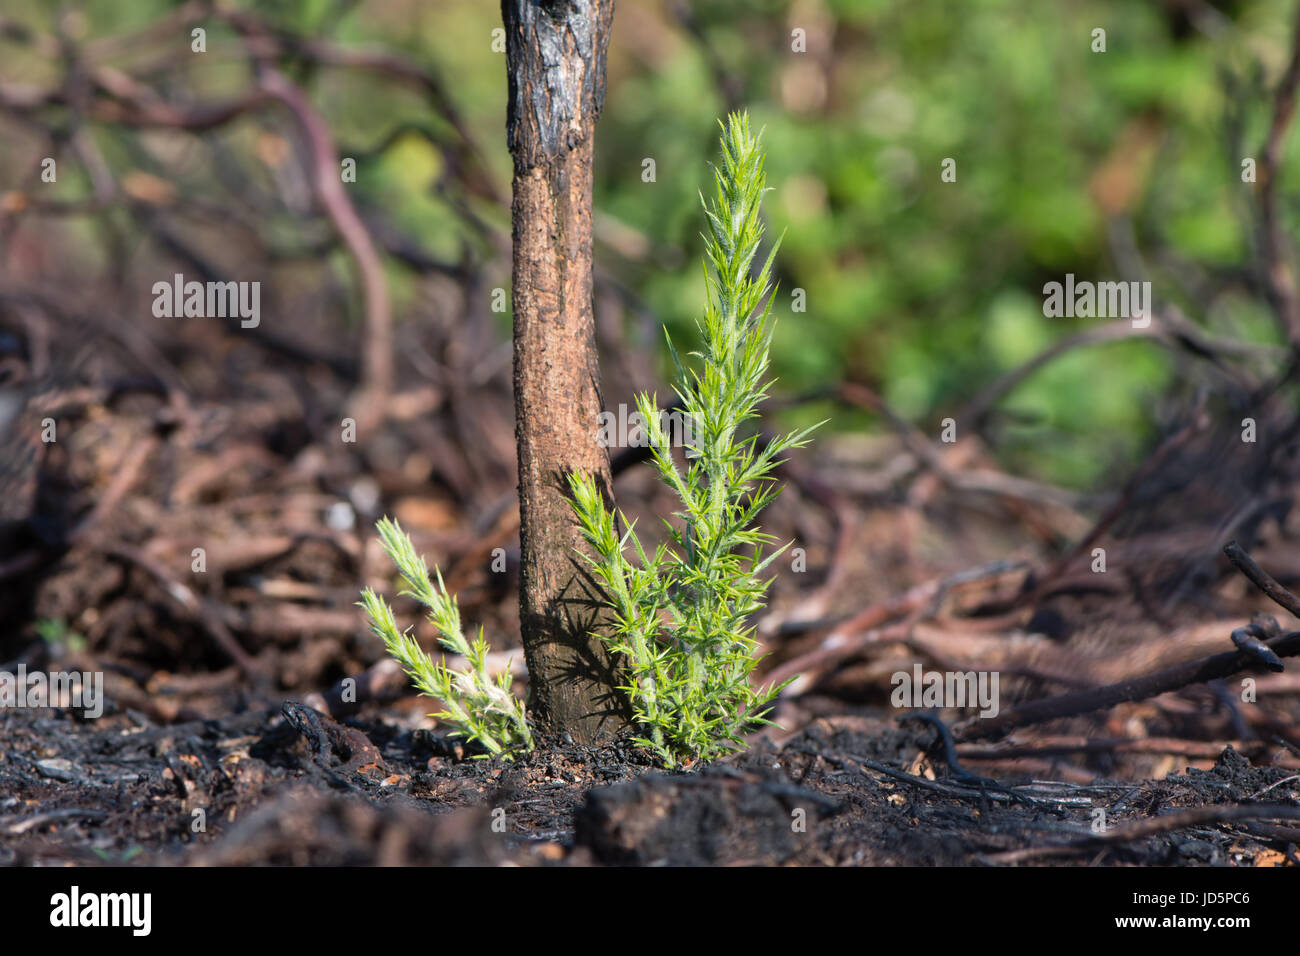 Stechginster (Ulex Europaeus) nachwachsen schießt nach dem Brennen. Neues Wachstum auf Basis des Werks nach Bereich der Heide brannte, vegetative Folge zu verhindern Stockfoto